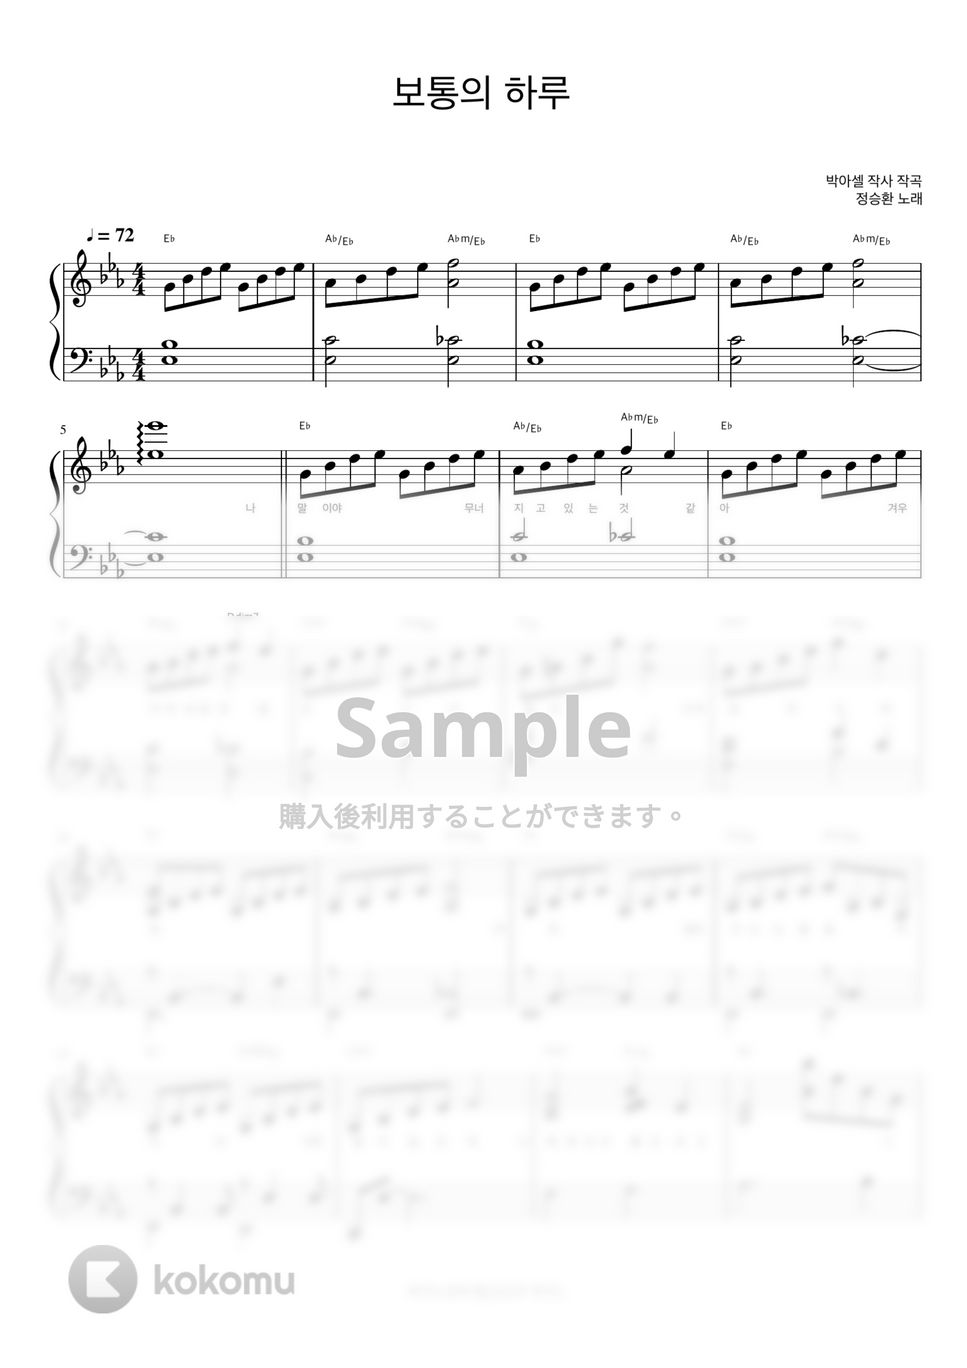 チョン・スンファン - 普通の一日 (マイ・ディア・ミスター OST, 伴奏楽譜) by 피아노정류장